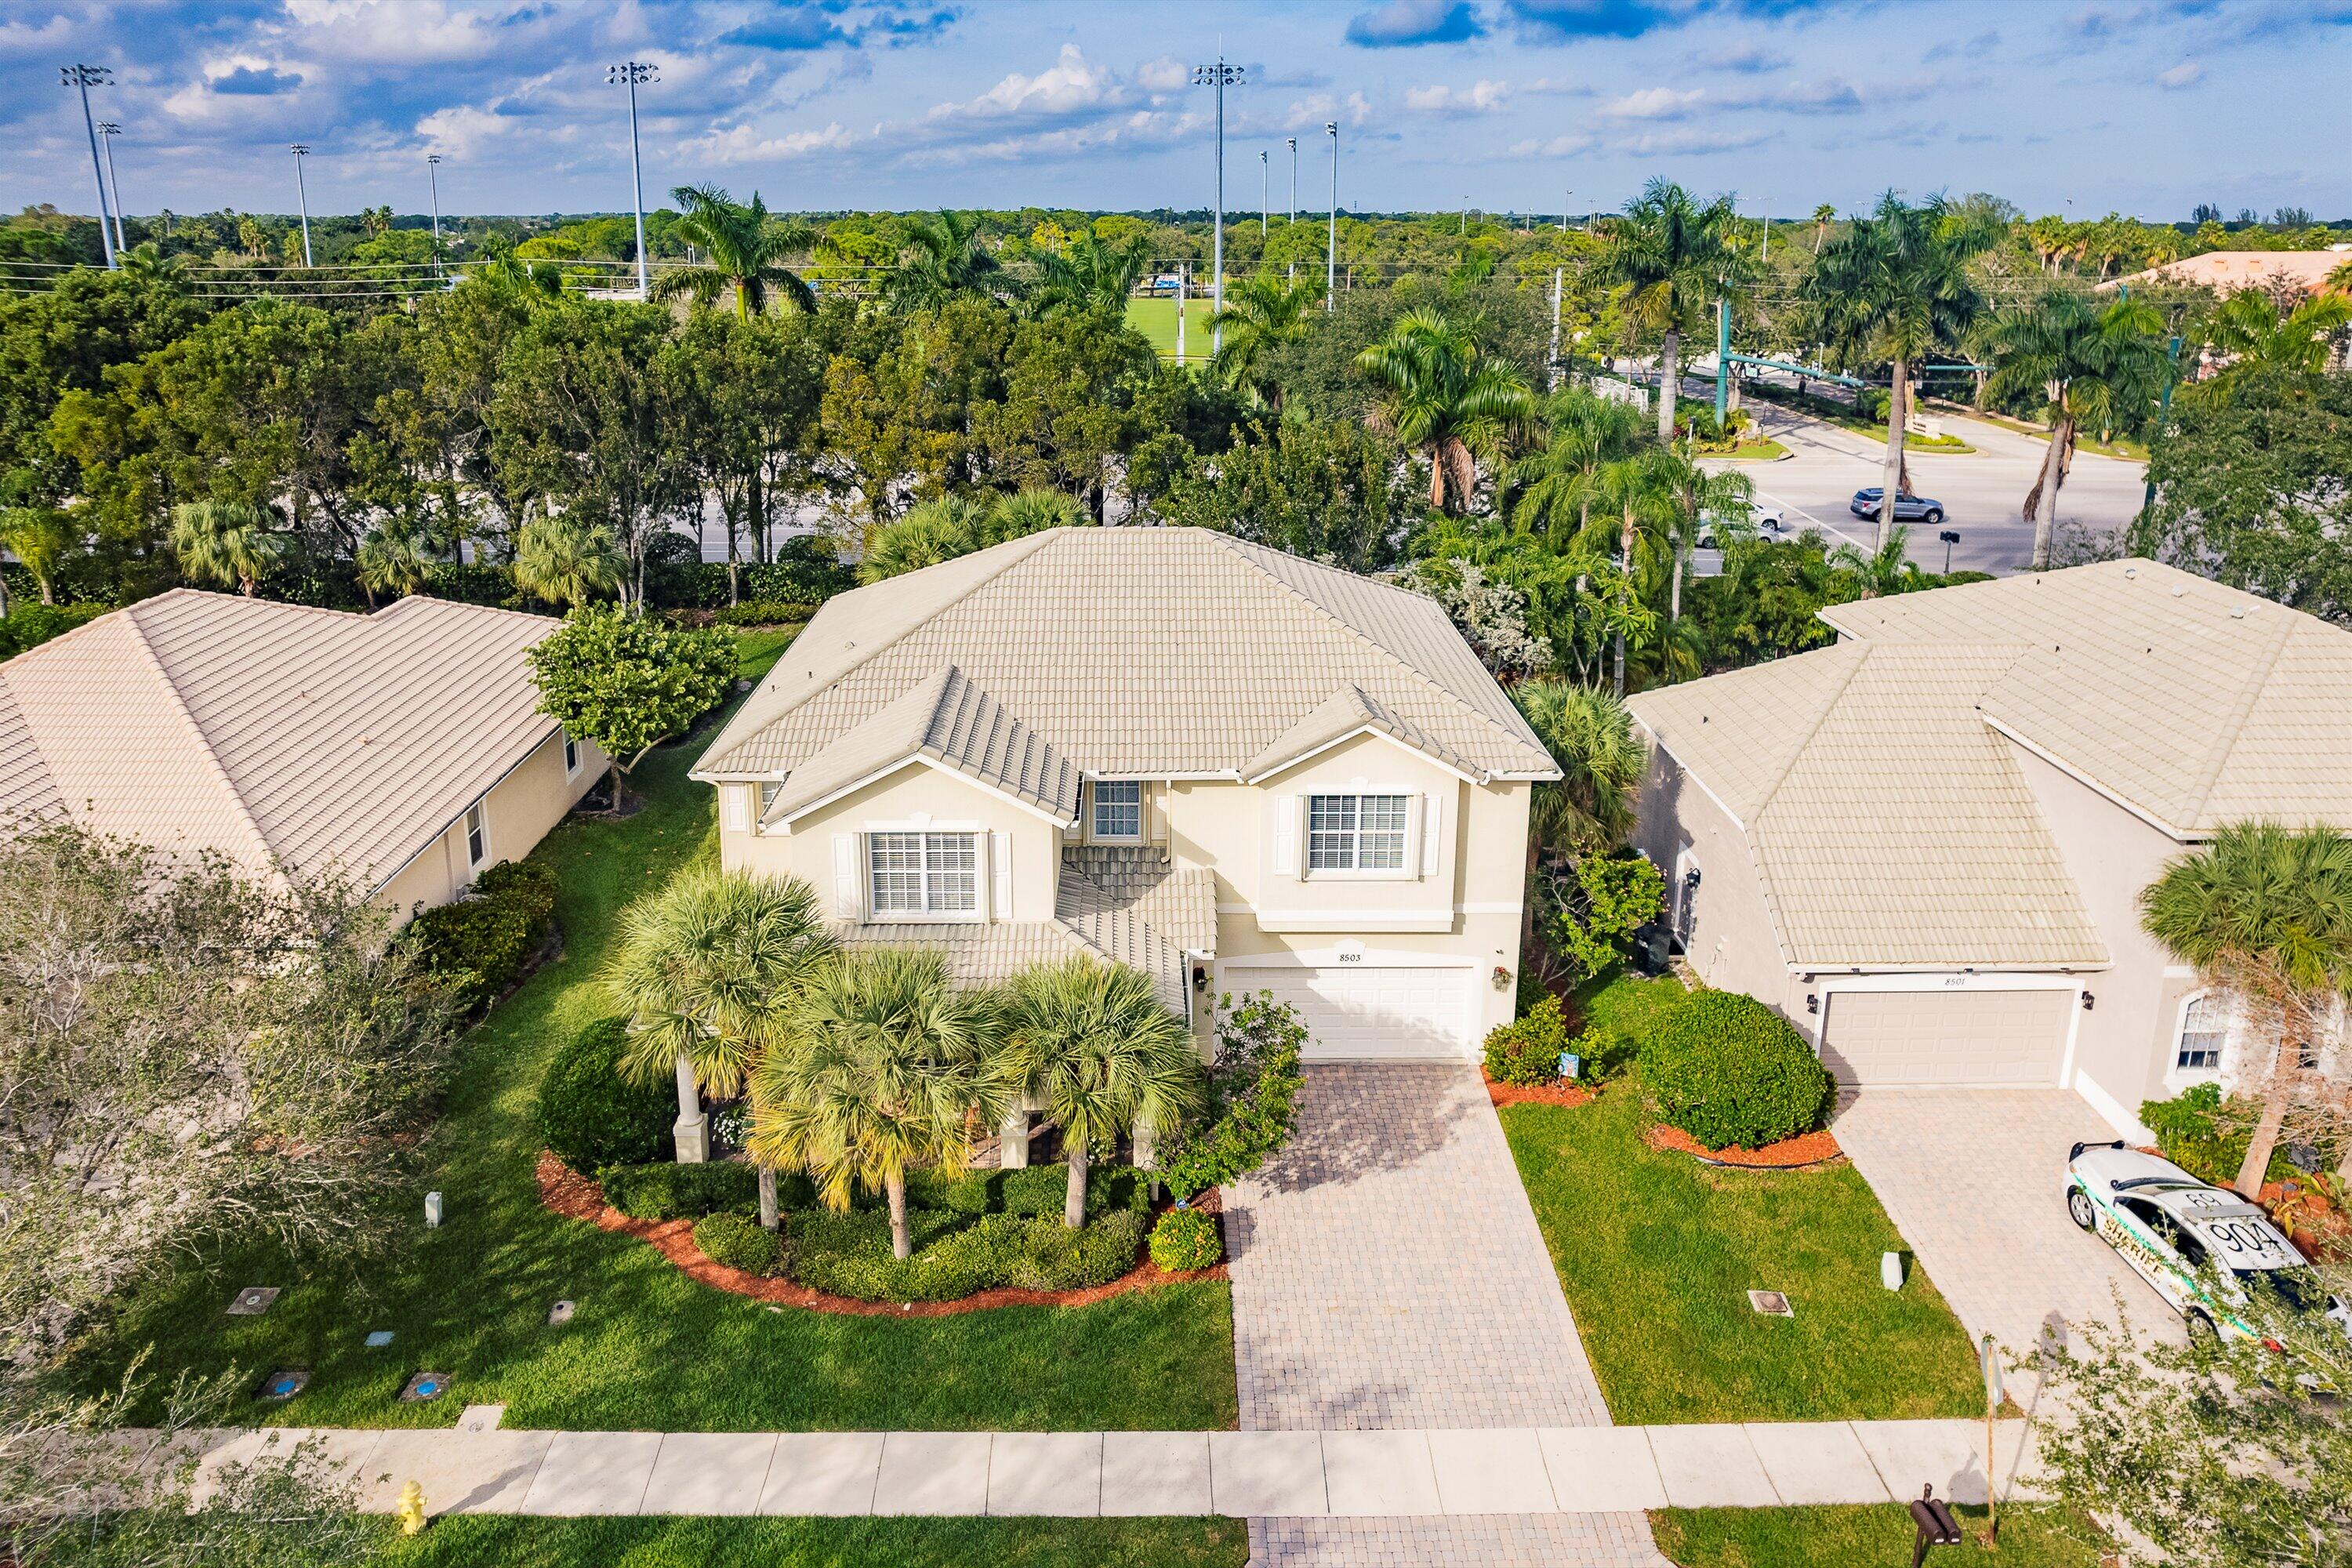 Property for Sale at 8503 Portobello Lane, Palm Beach Gardens, Palm Beach County, Florida - Bedrooms: 4 
Bathrooms: 4  - $899,000